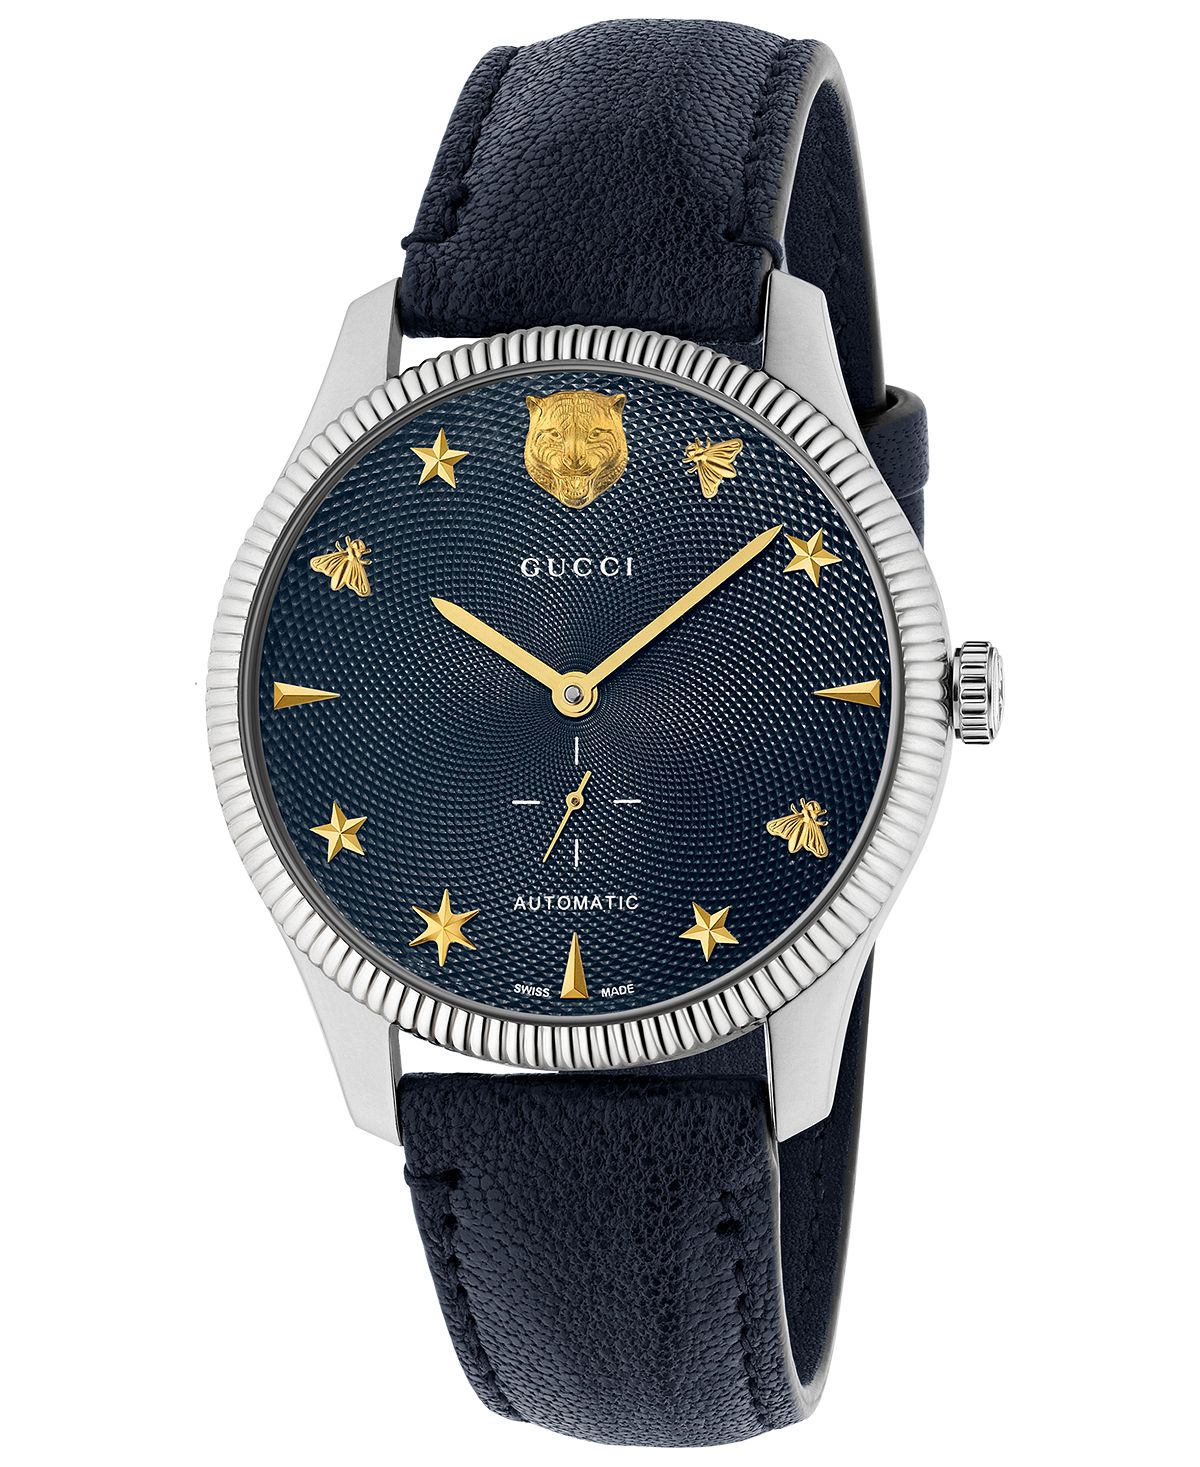 Унисекс Швейцарские автоматические часы G-Timeless с синим кожаным ремешком, 40 мм Gucci